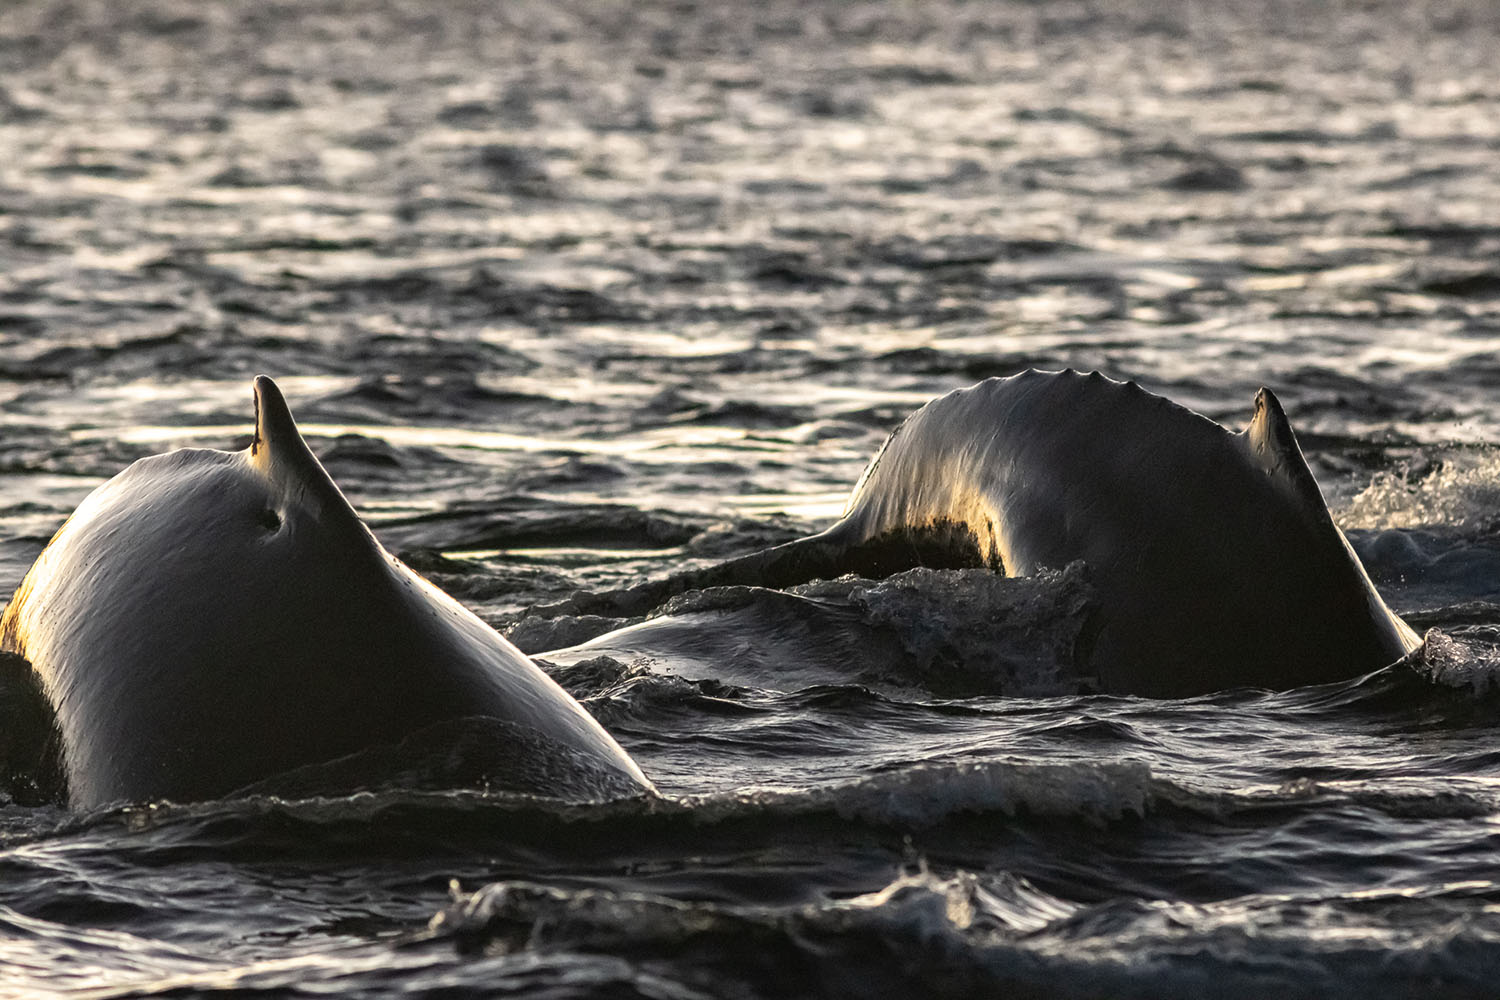 voyage scientifique - orques et baleines a bosse de norvege 35